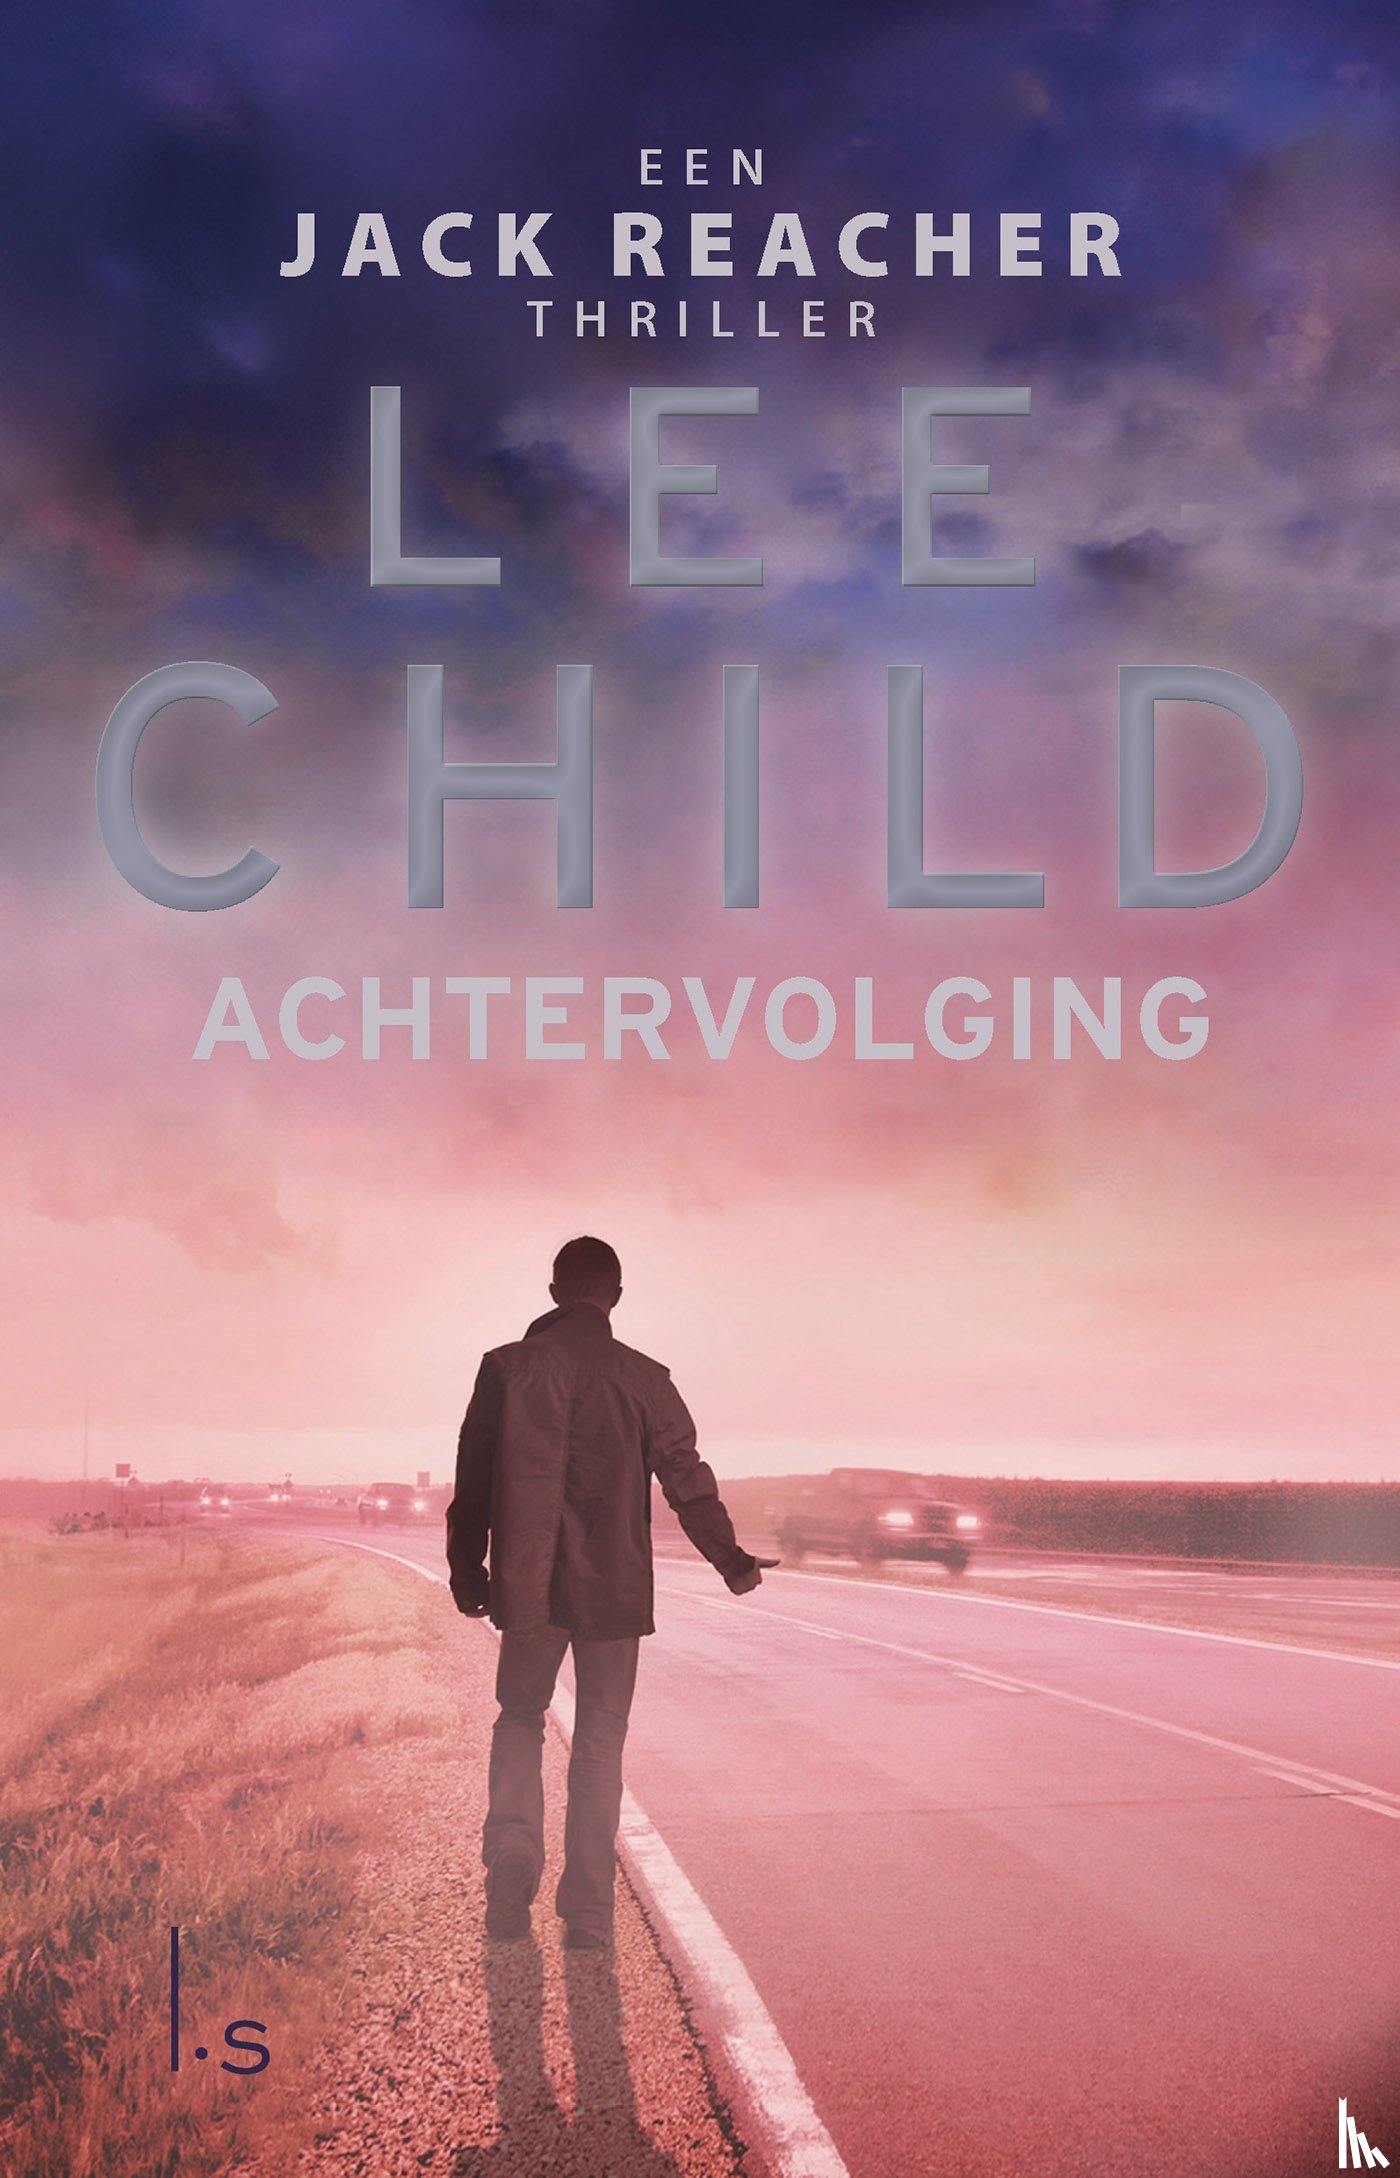 Child, Lee - Achtervolging